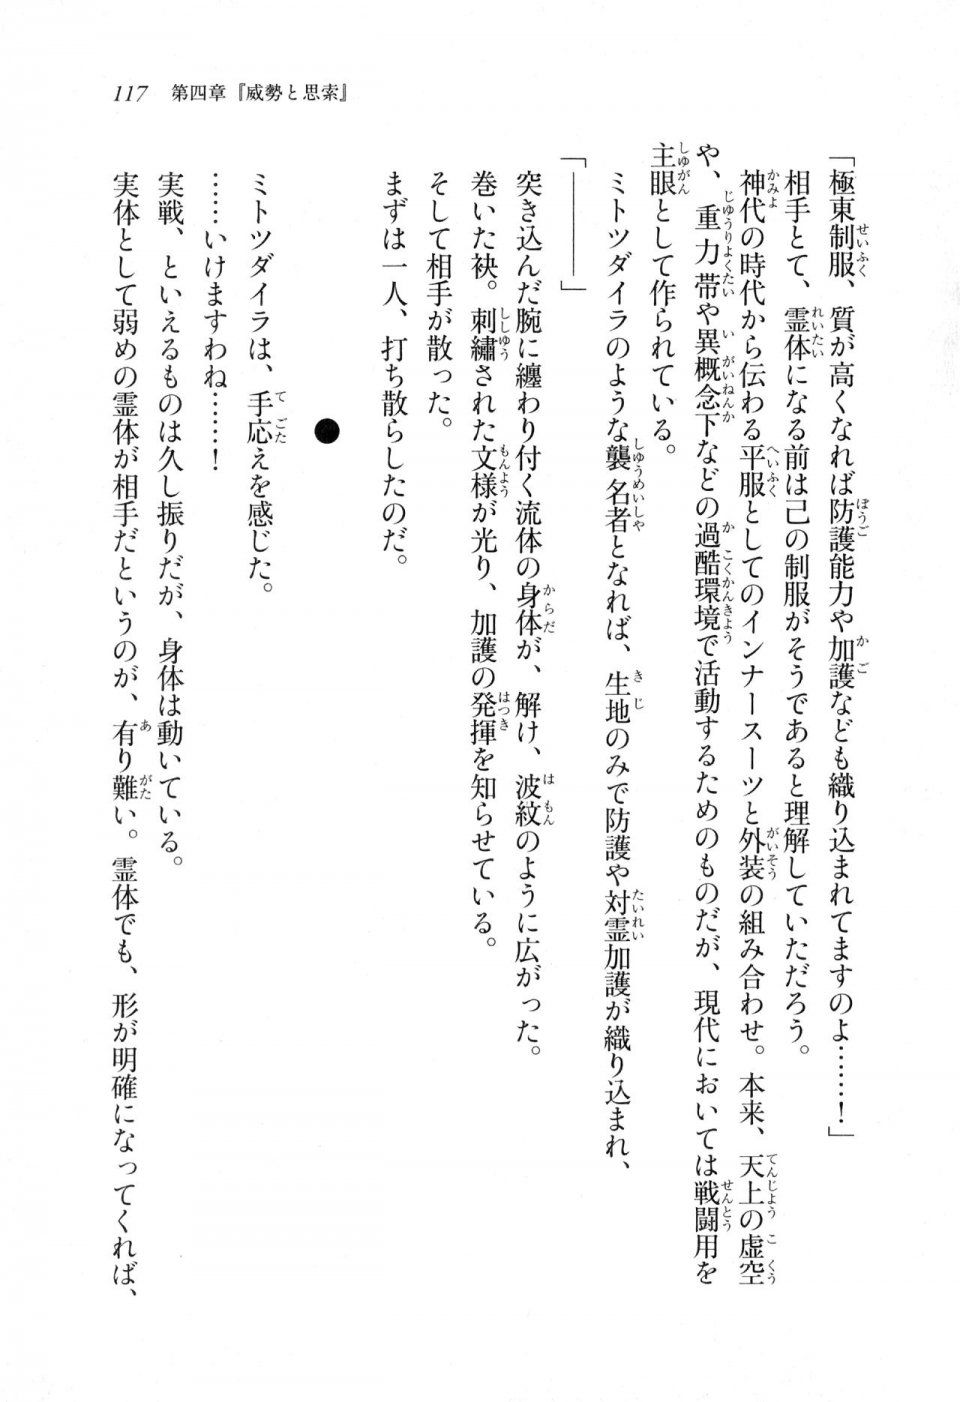 Kyoukai Senjou no Horizon LN Sidestory Vol 1 - Photo #115